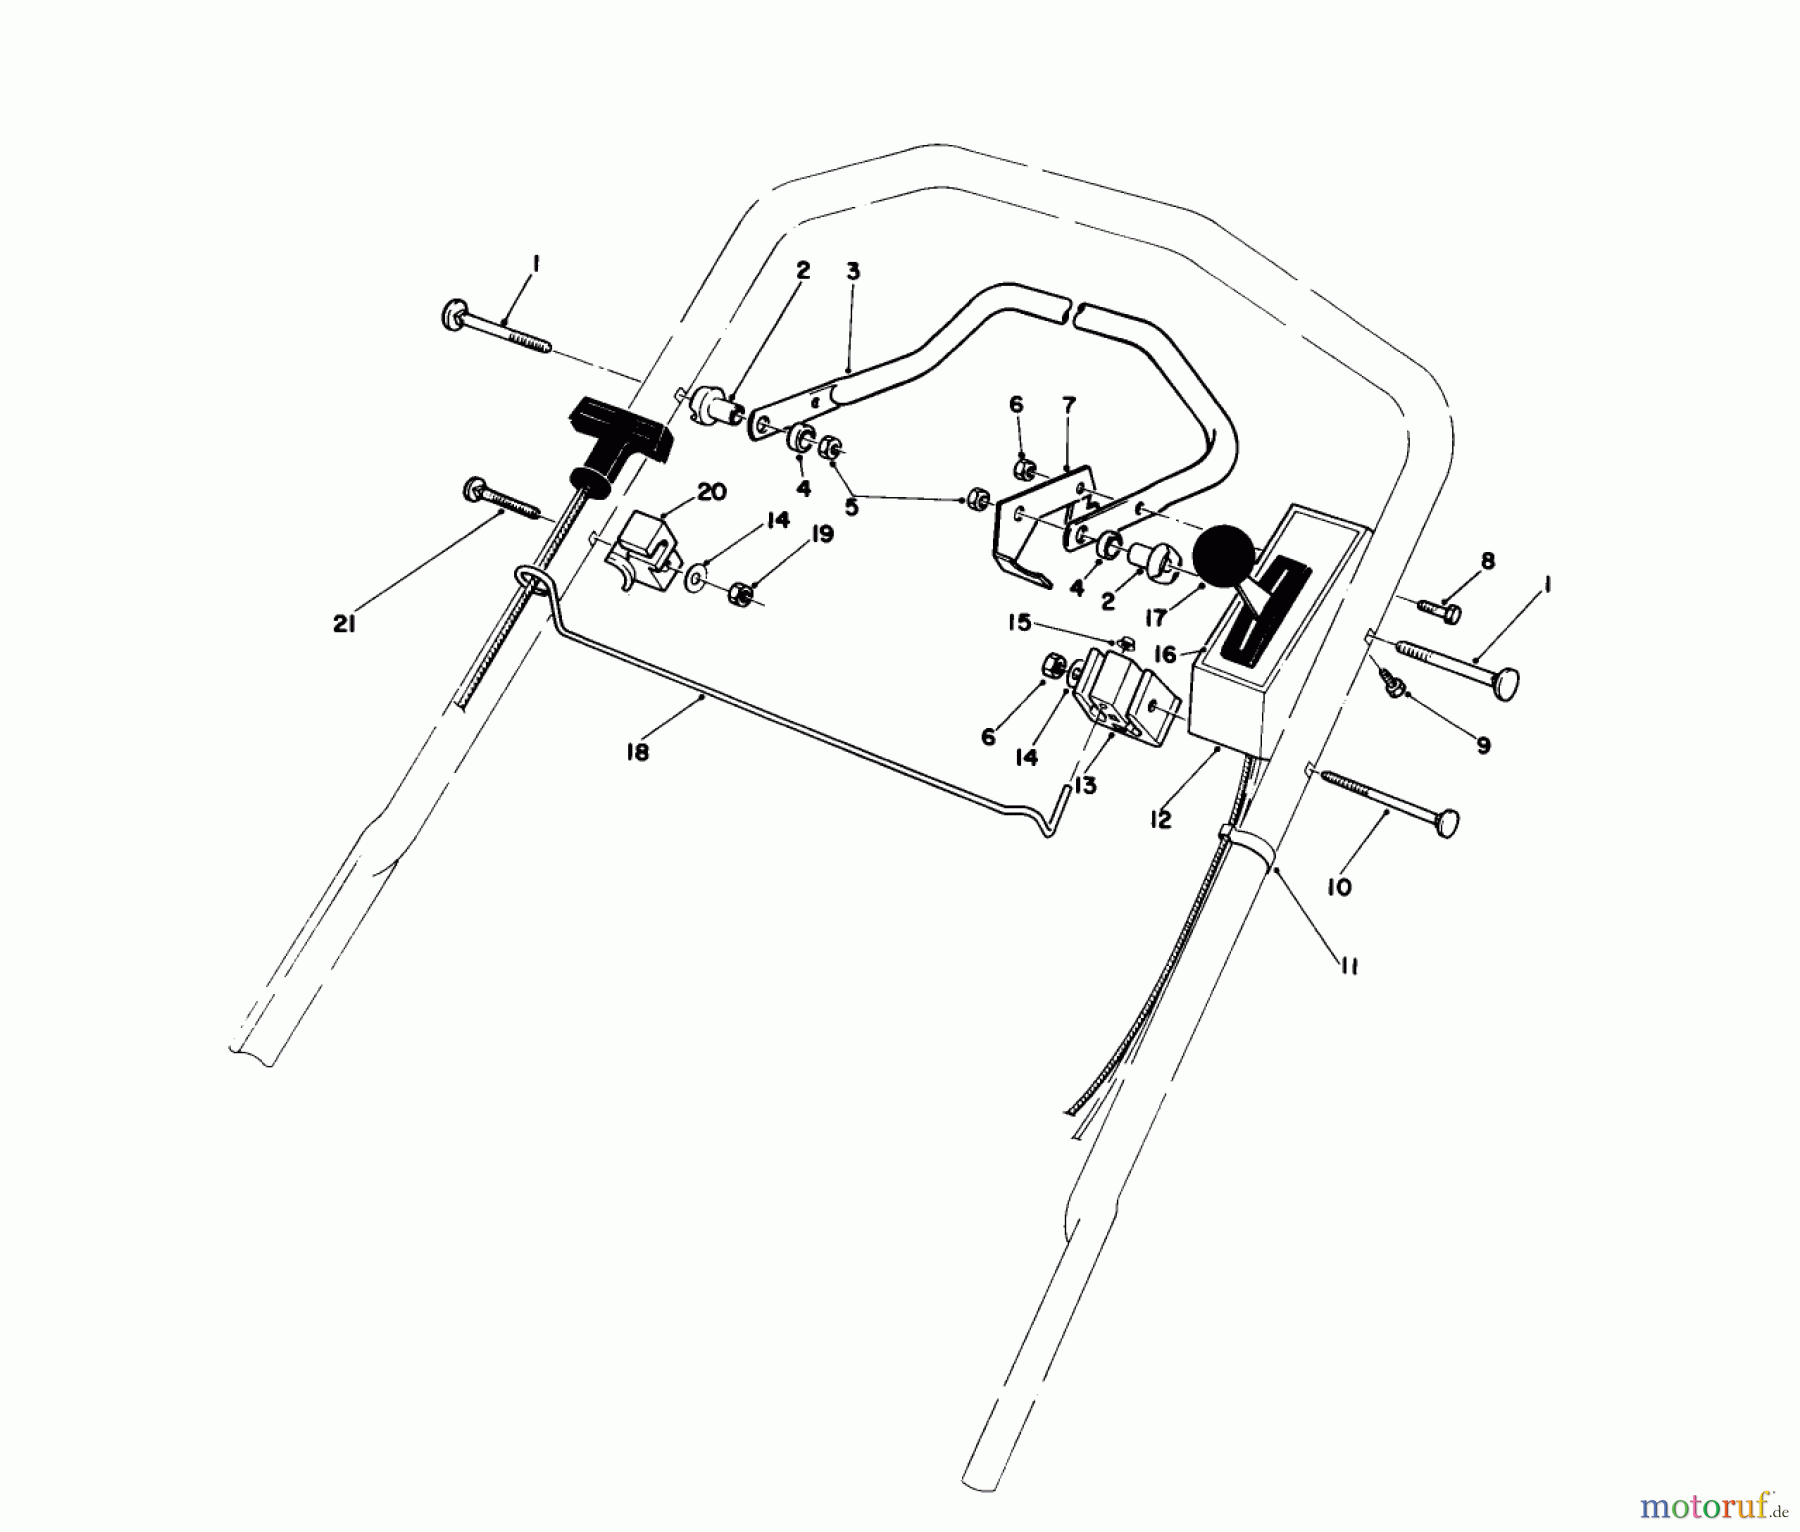  Toro Neu Mowers, Walk-Behind Seite 1 20581 - Toro Lawnmower, 1987 (7000001-7999999) CONTROL ASSEMBLY